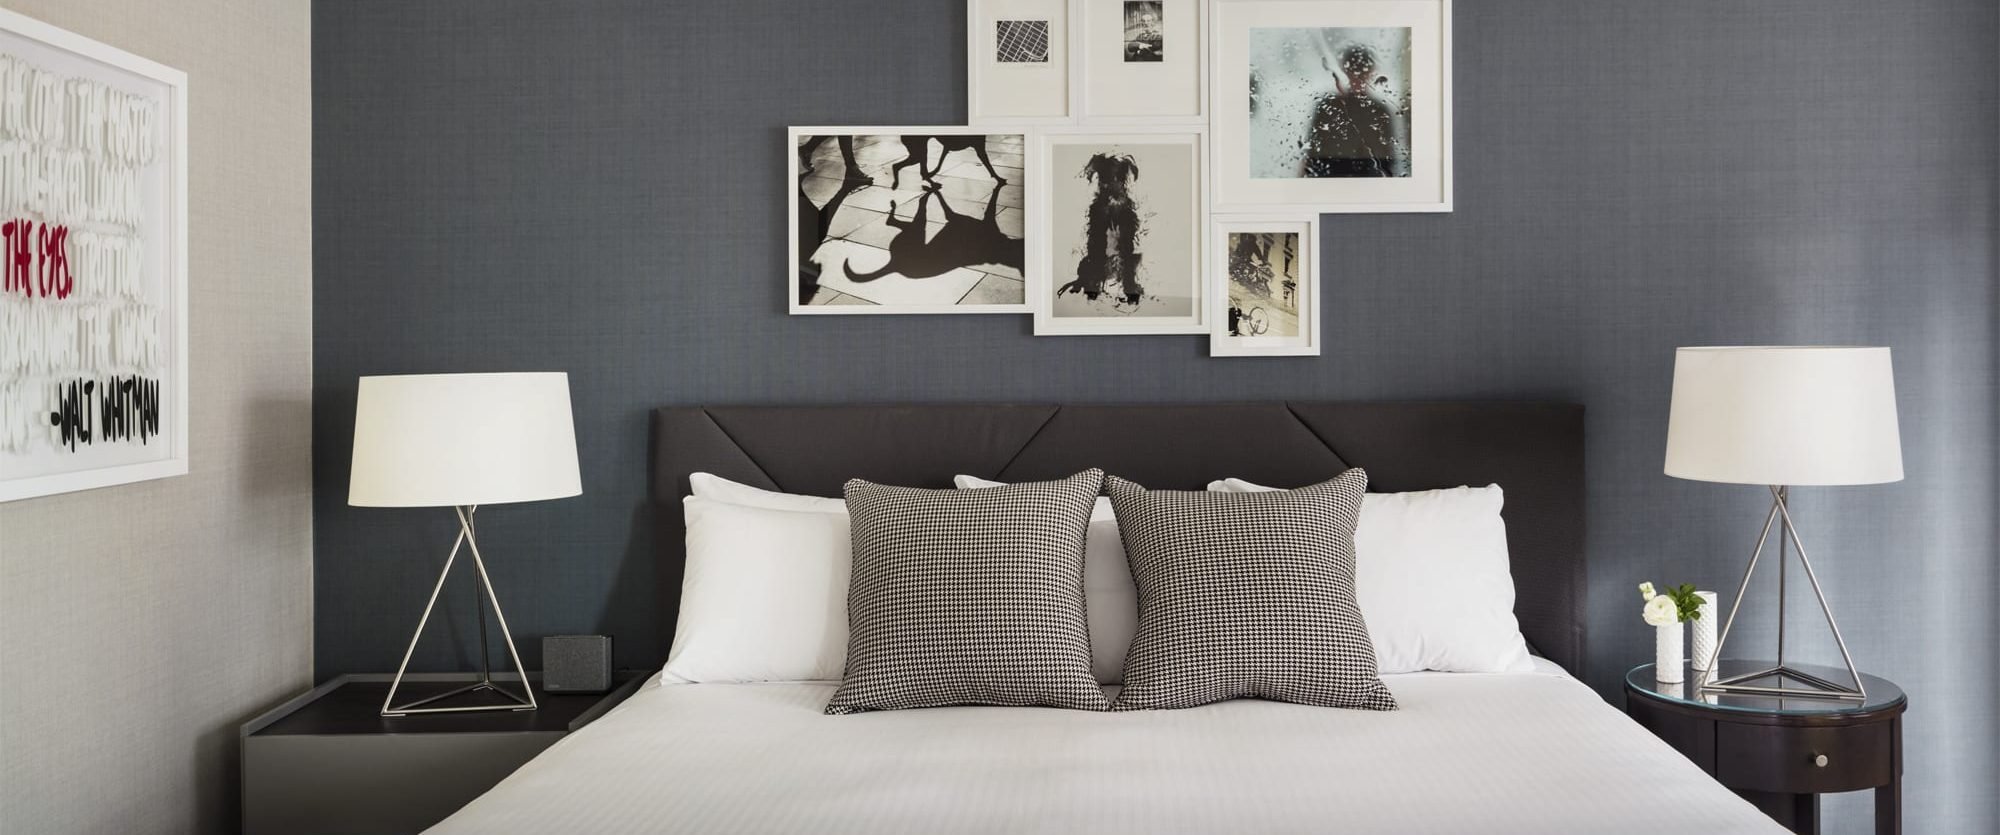 Shelburne Hotel & Suites Guestroom Bed